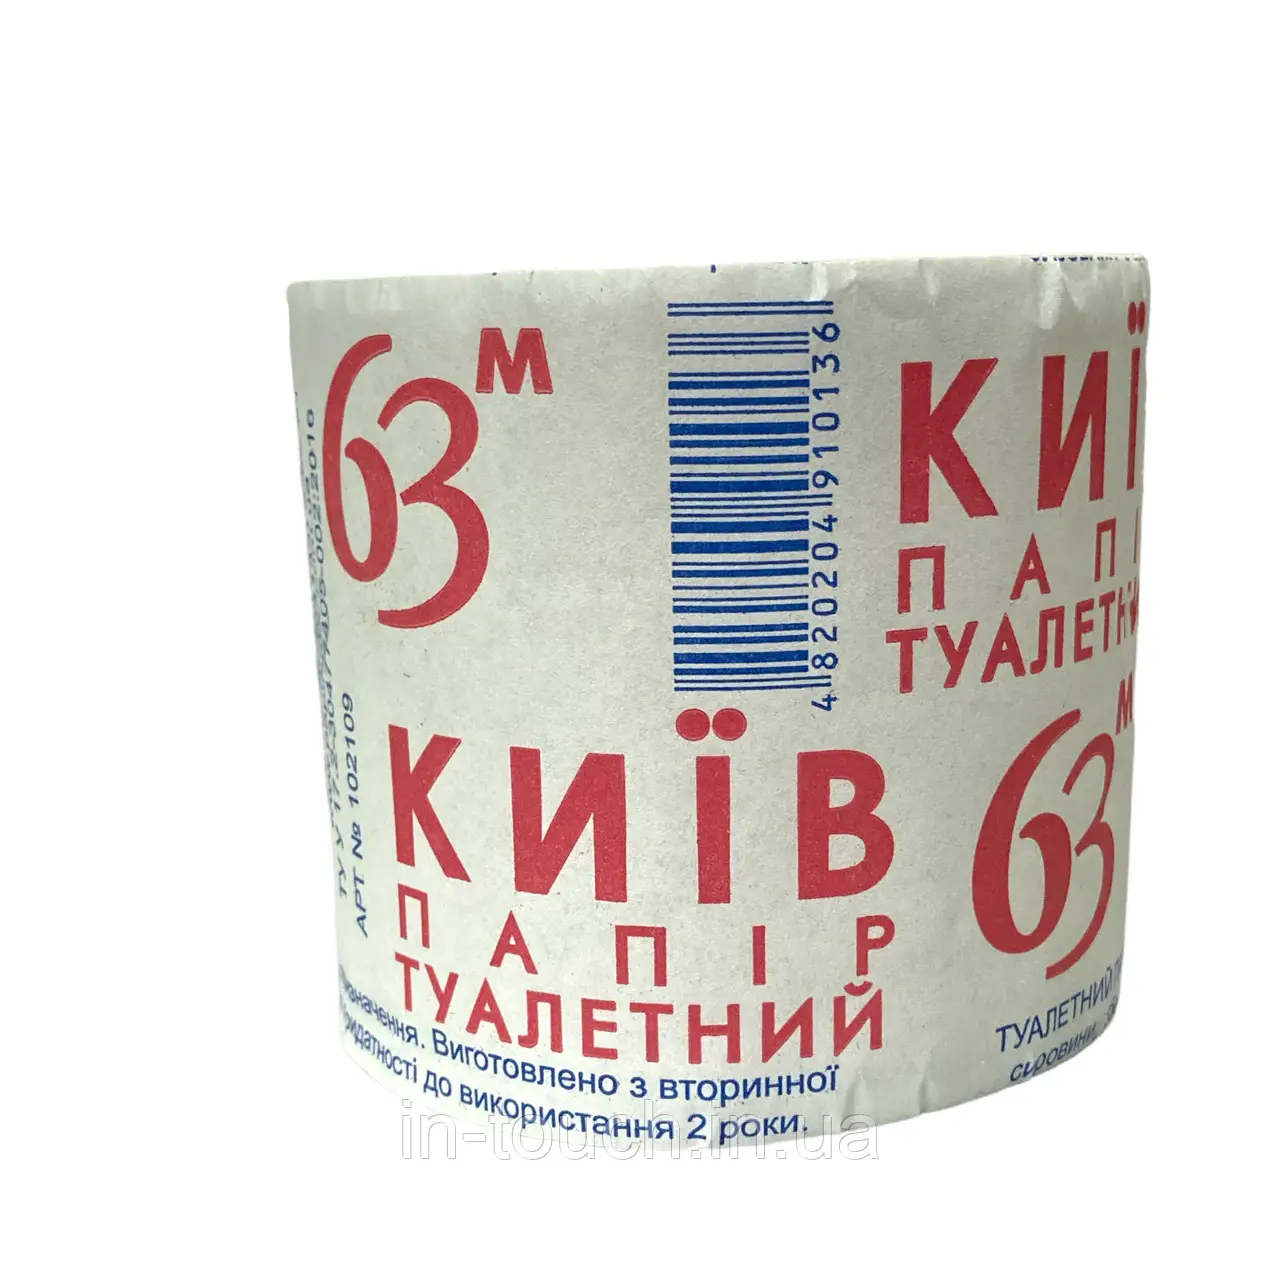 Папір туалетний Київ 63м 48 шт